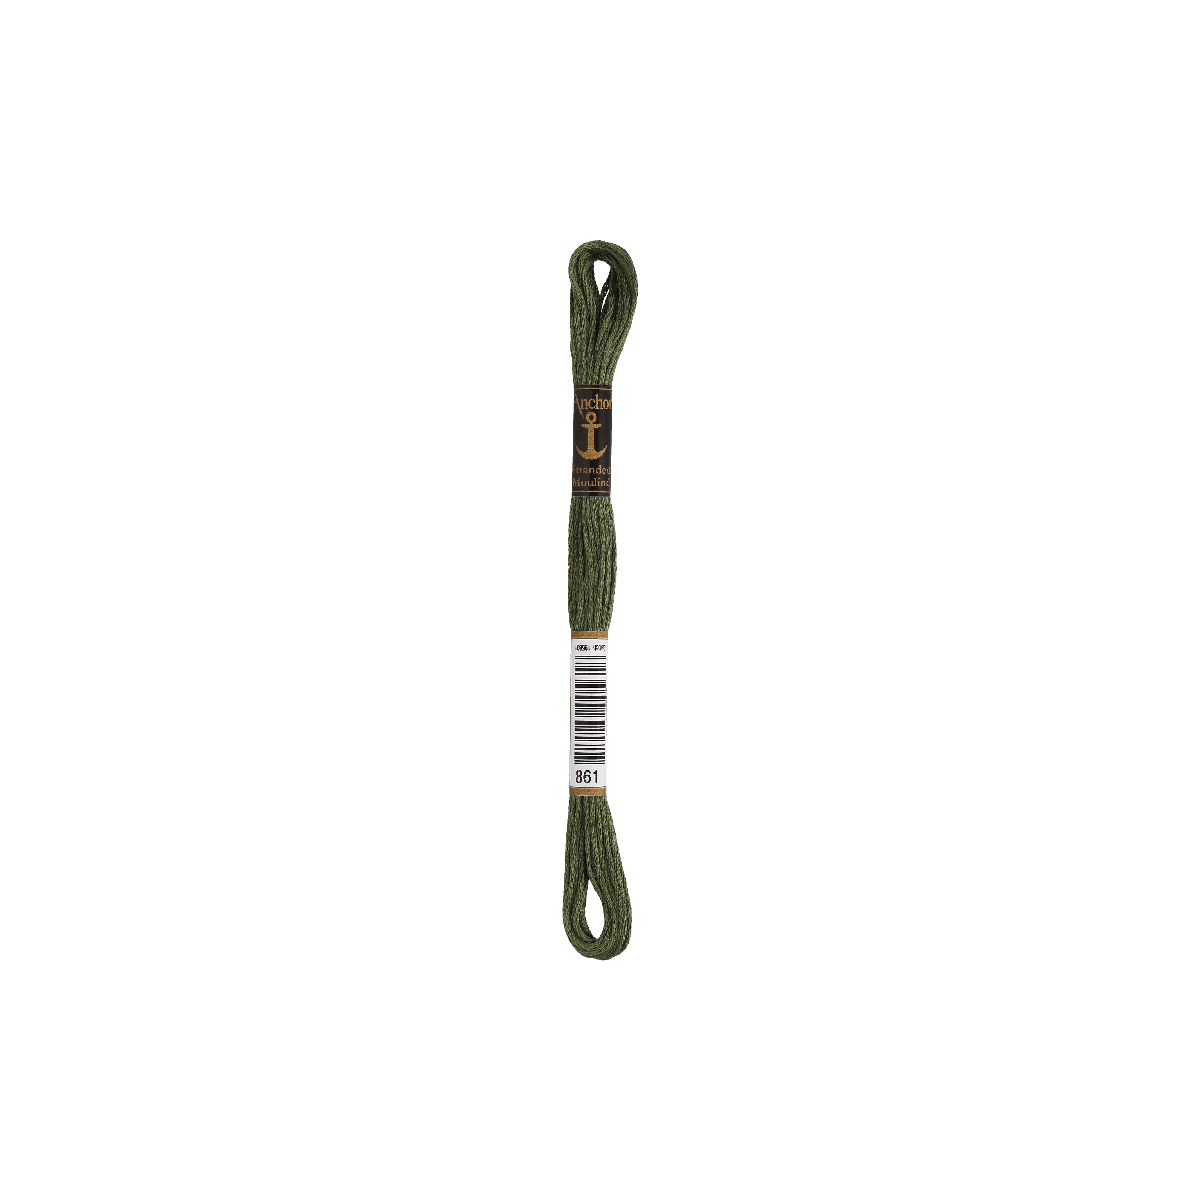 Anchor Sticktwist 8m, oud groen, katoen, kleur 861, 6-draads